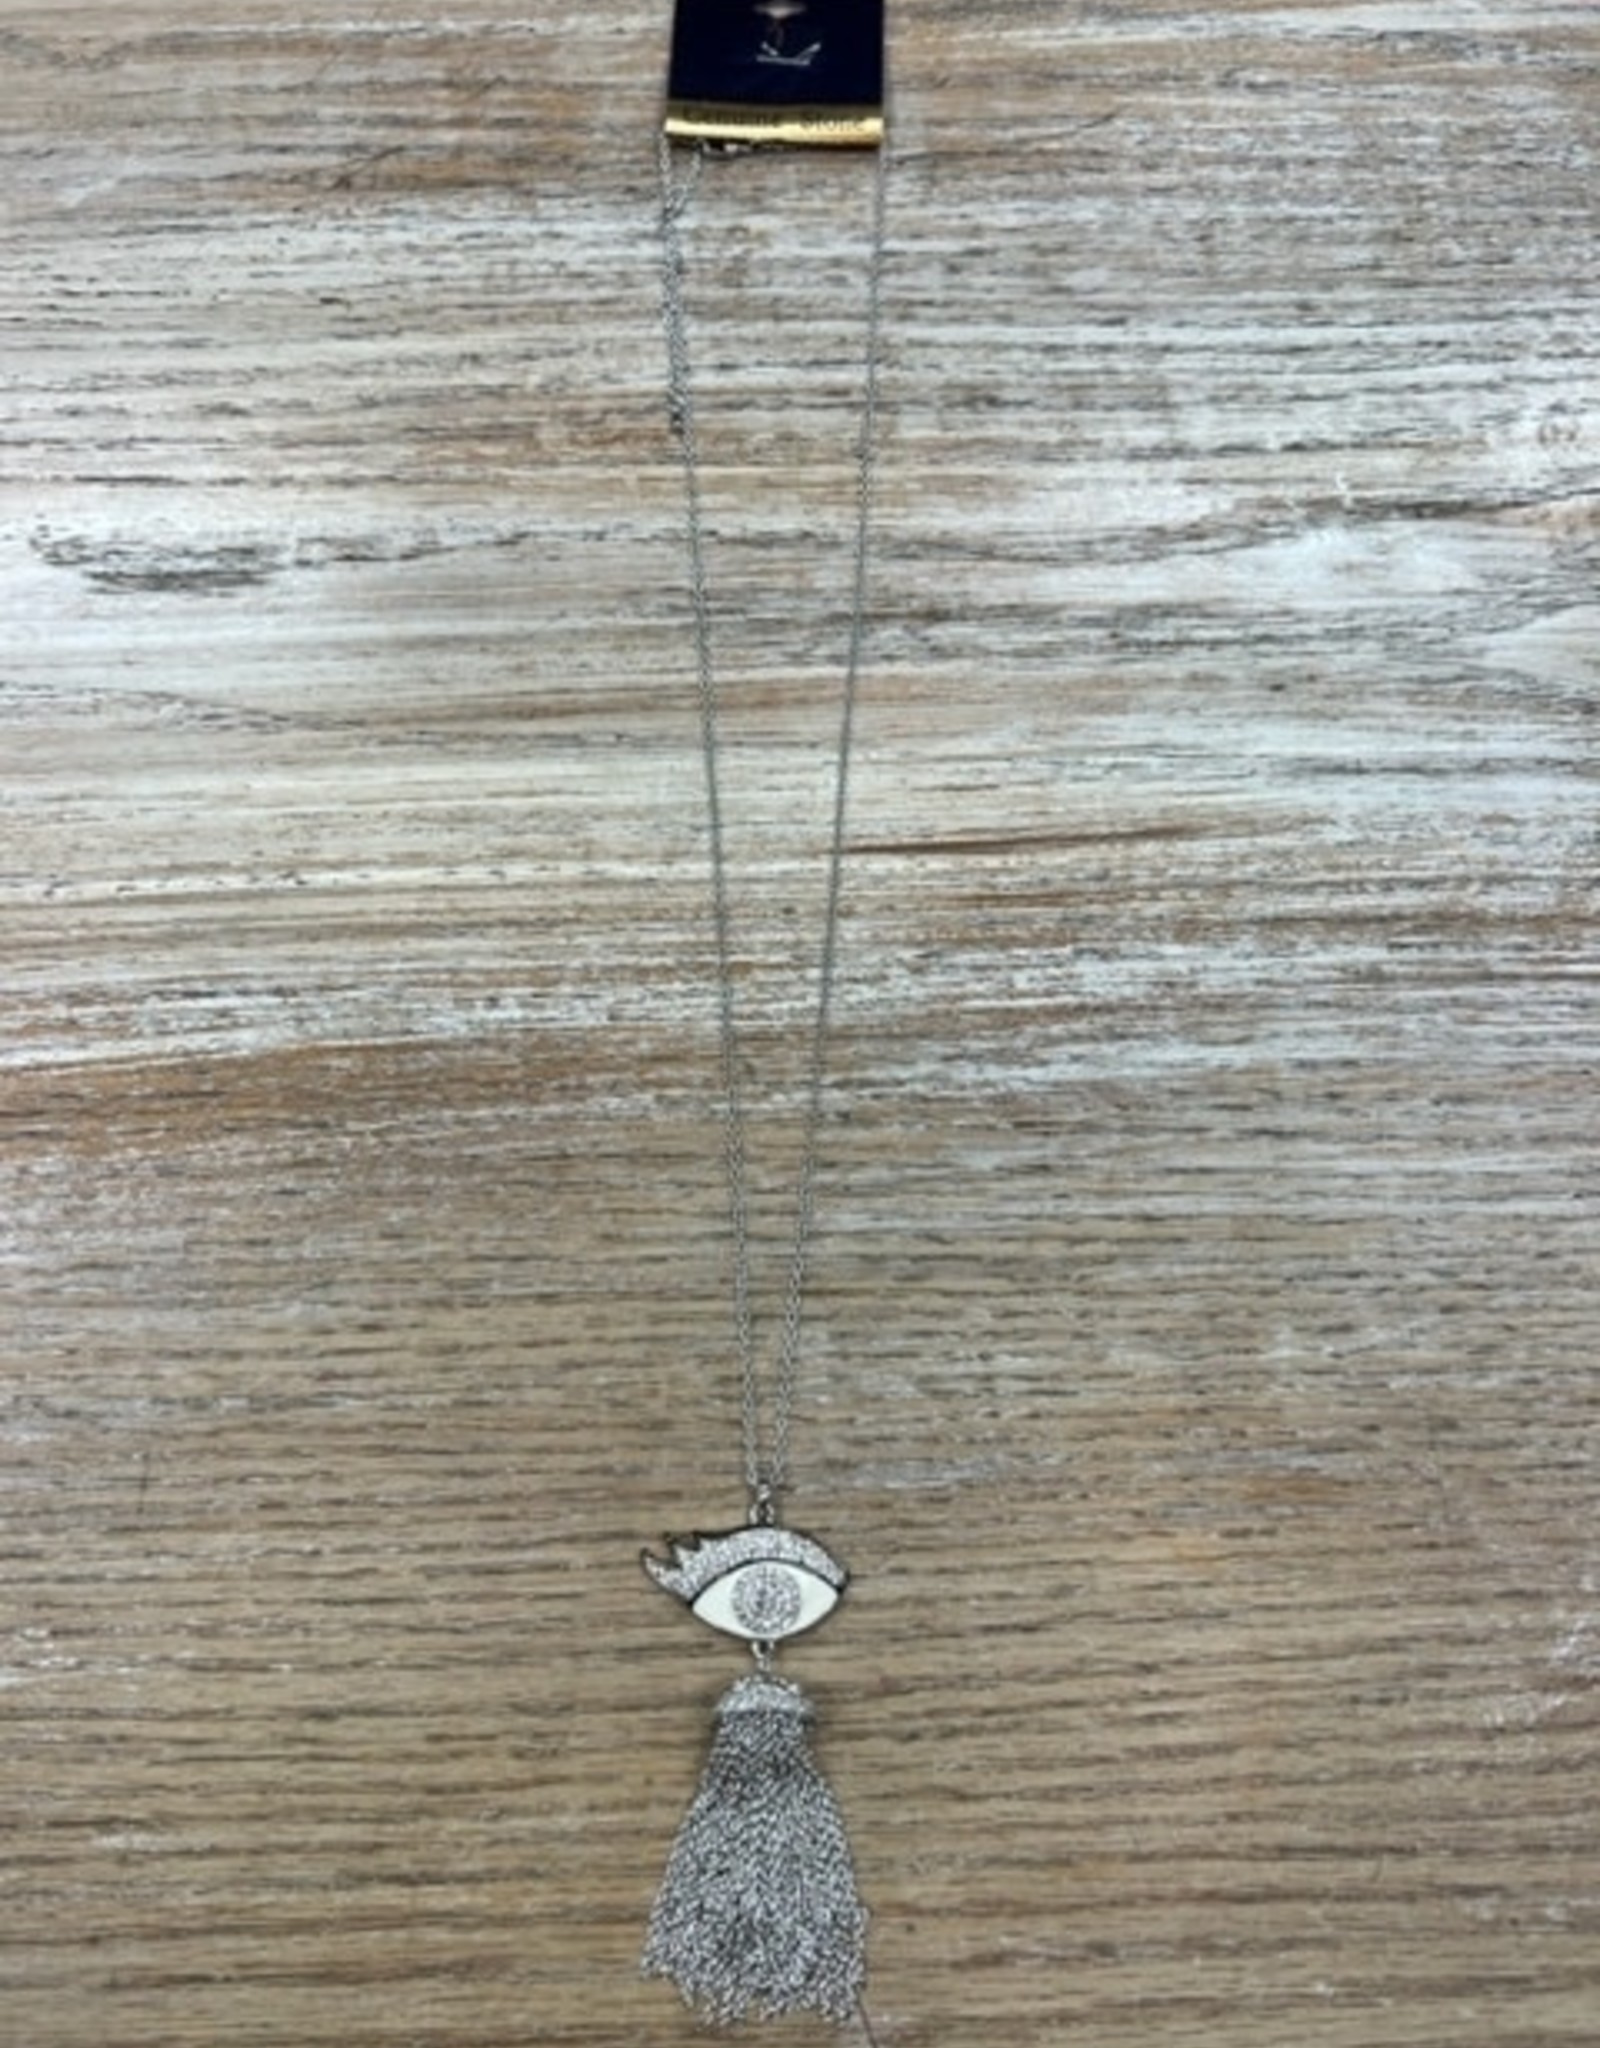 Jewelry Long Silver Eye w/ Tassel Necklace